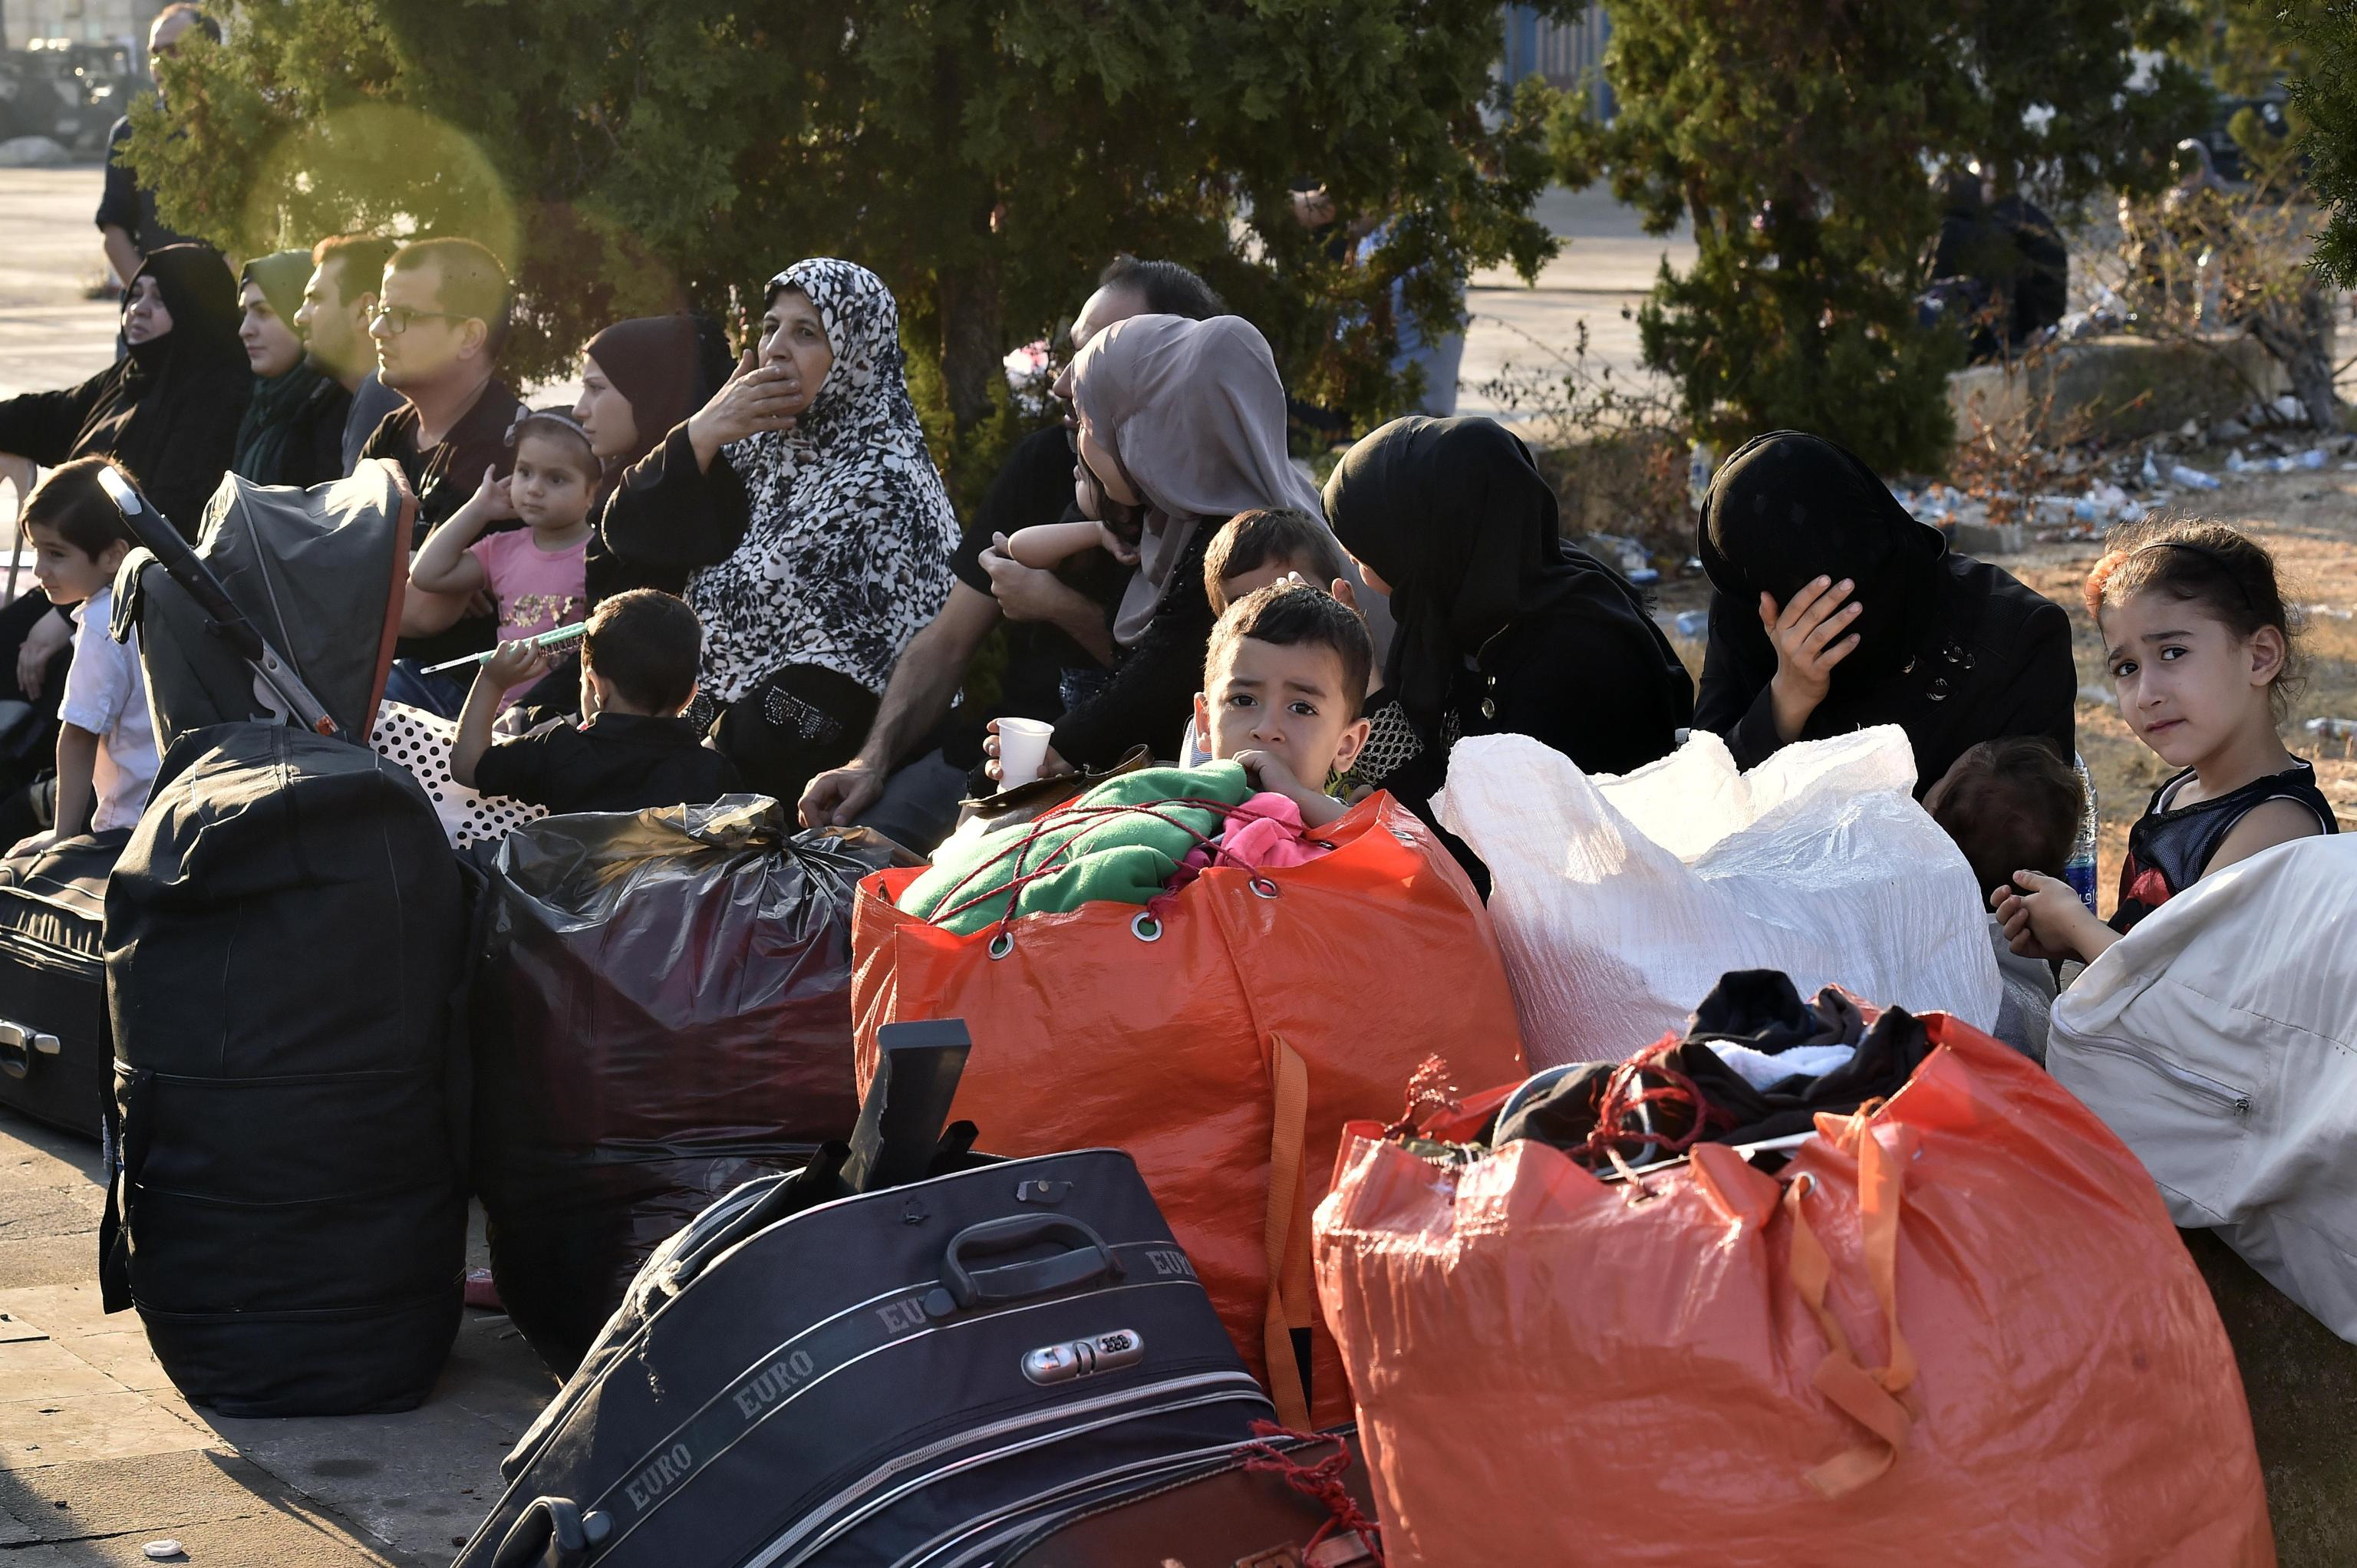 Fra i rifugiati siriani ci sono molte donne con bambini